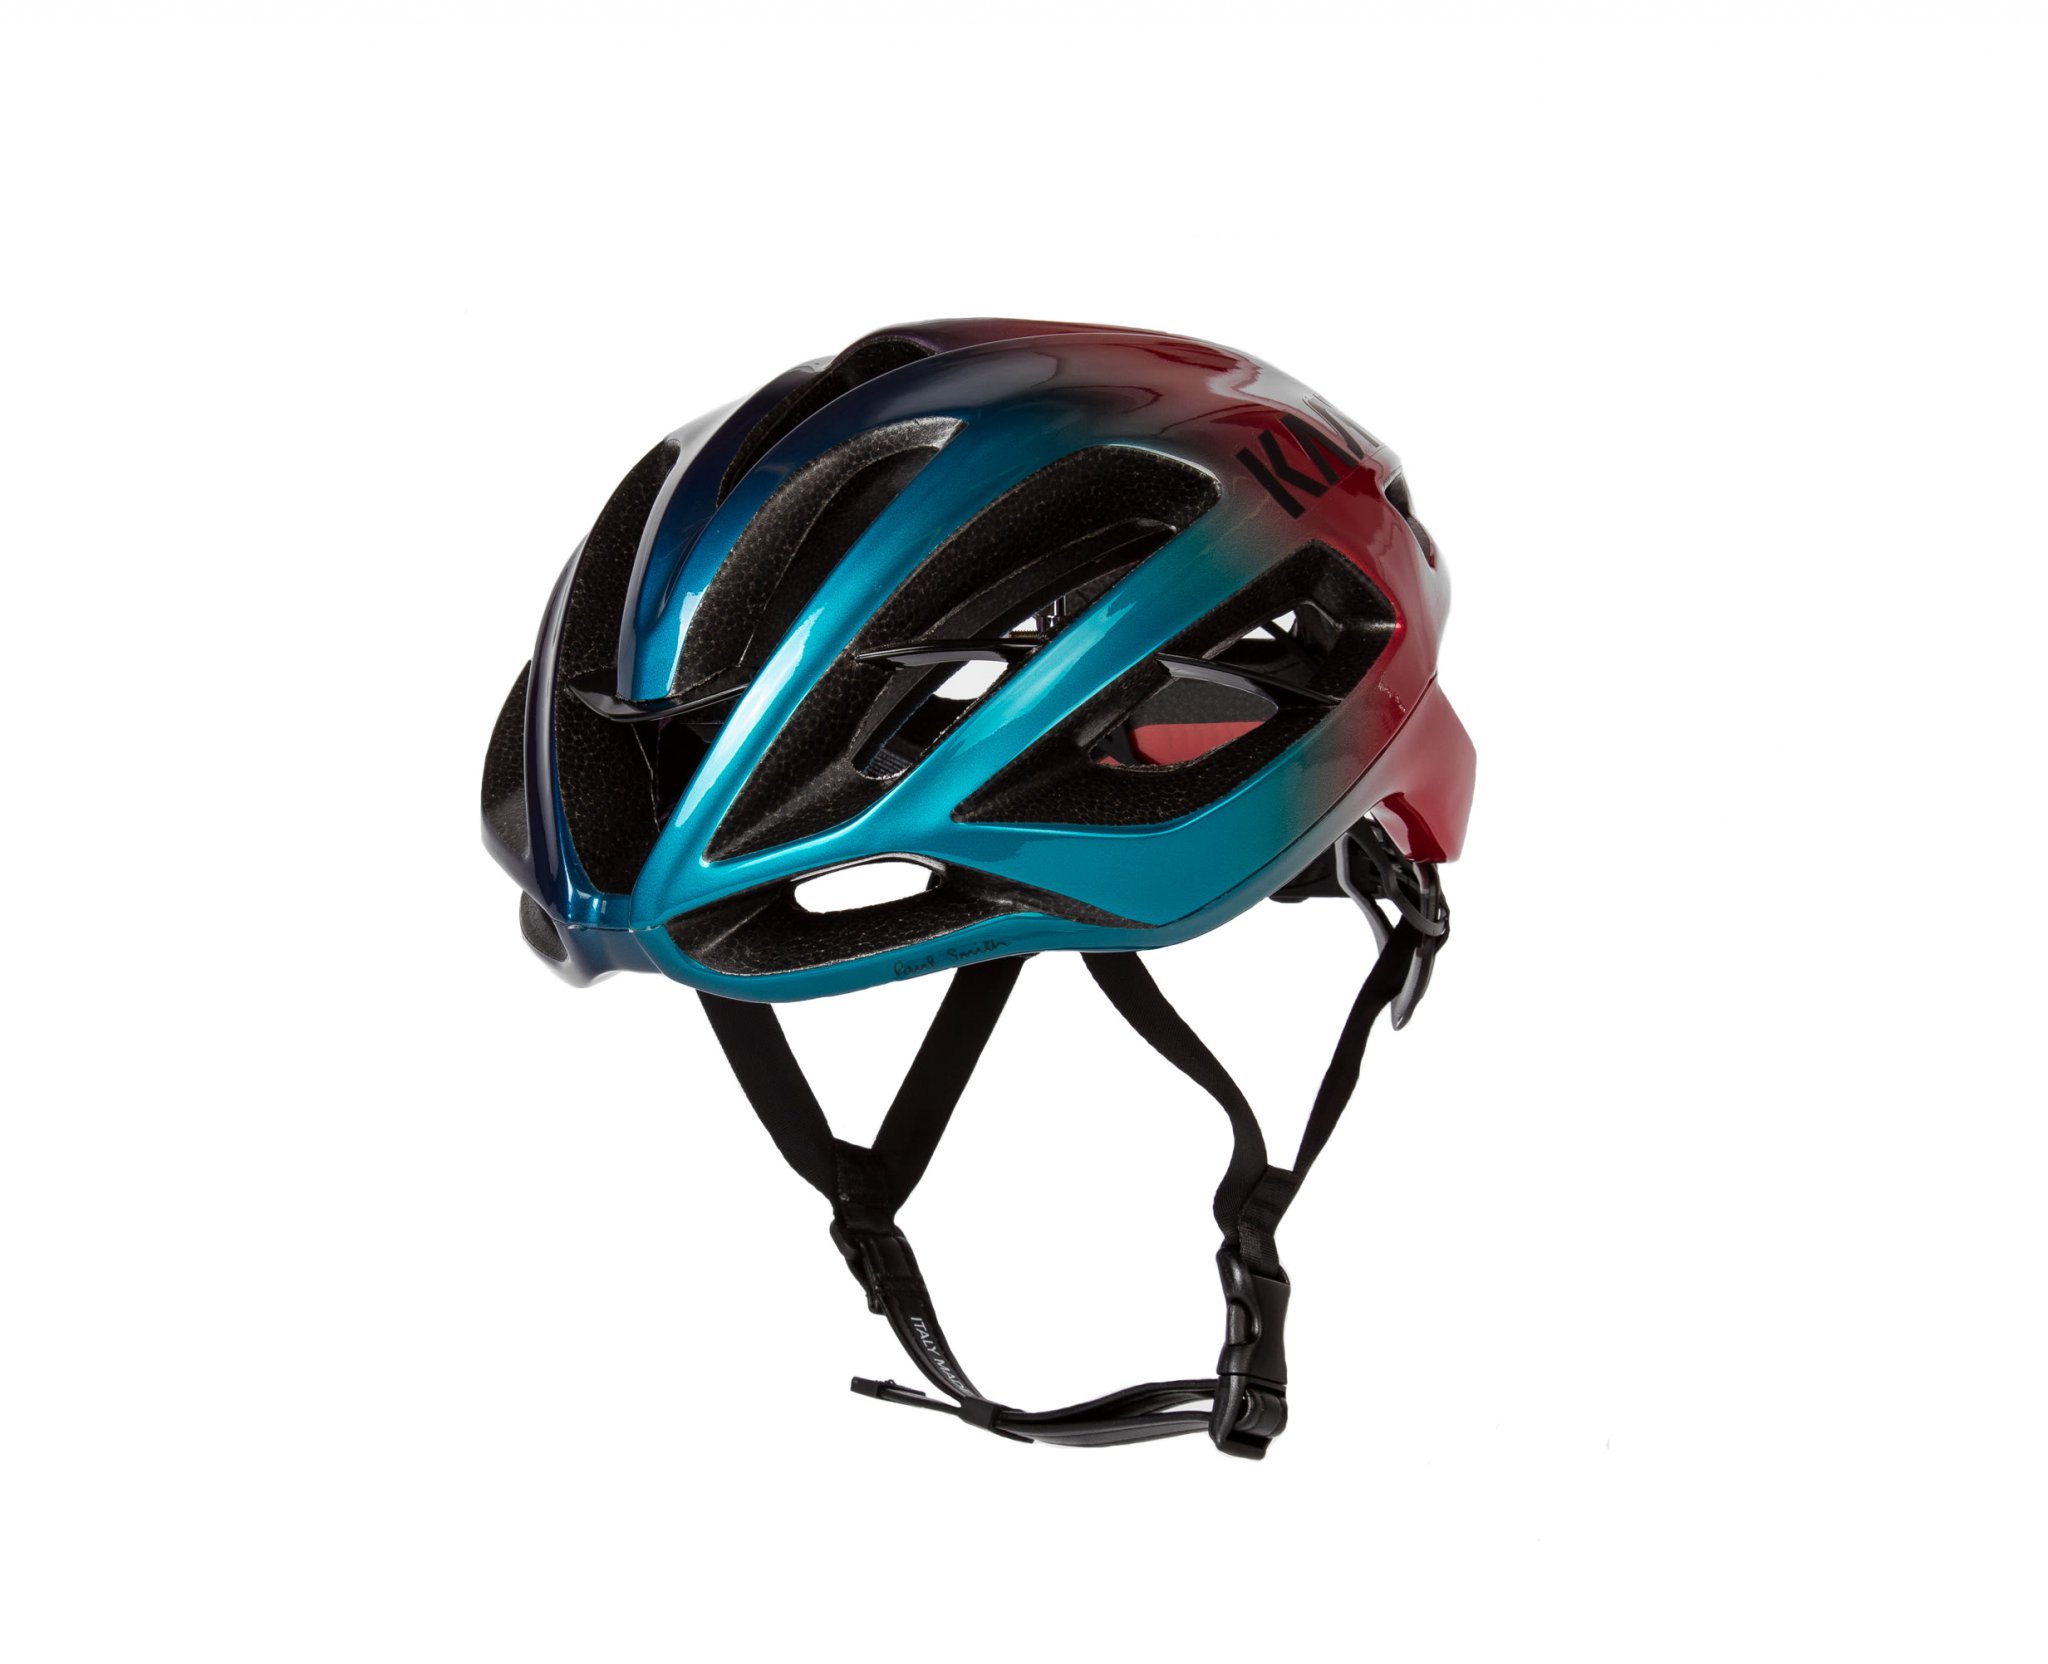 KASK Paul Smith + Kask 'Artist Stripe Fade' Protone Cycling Helmet